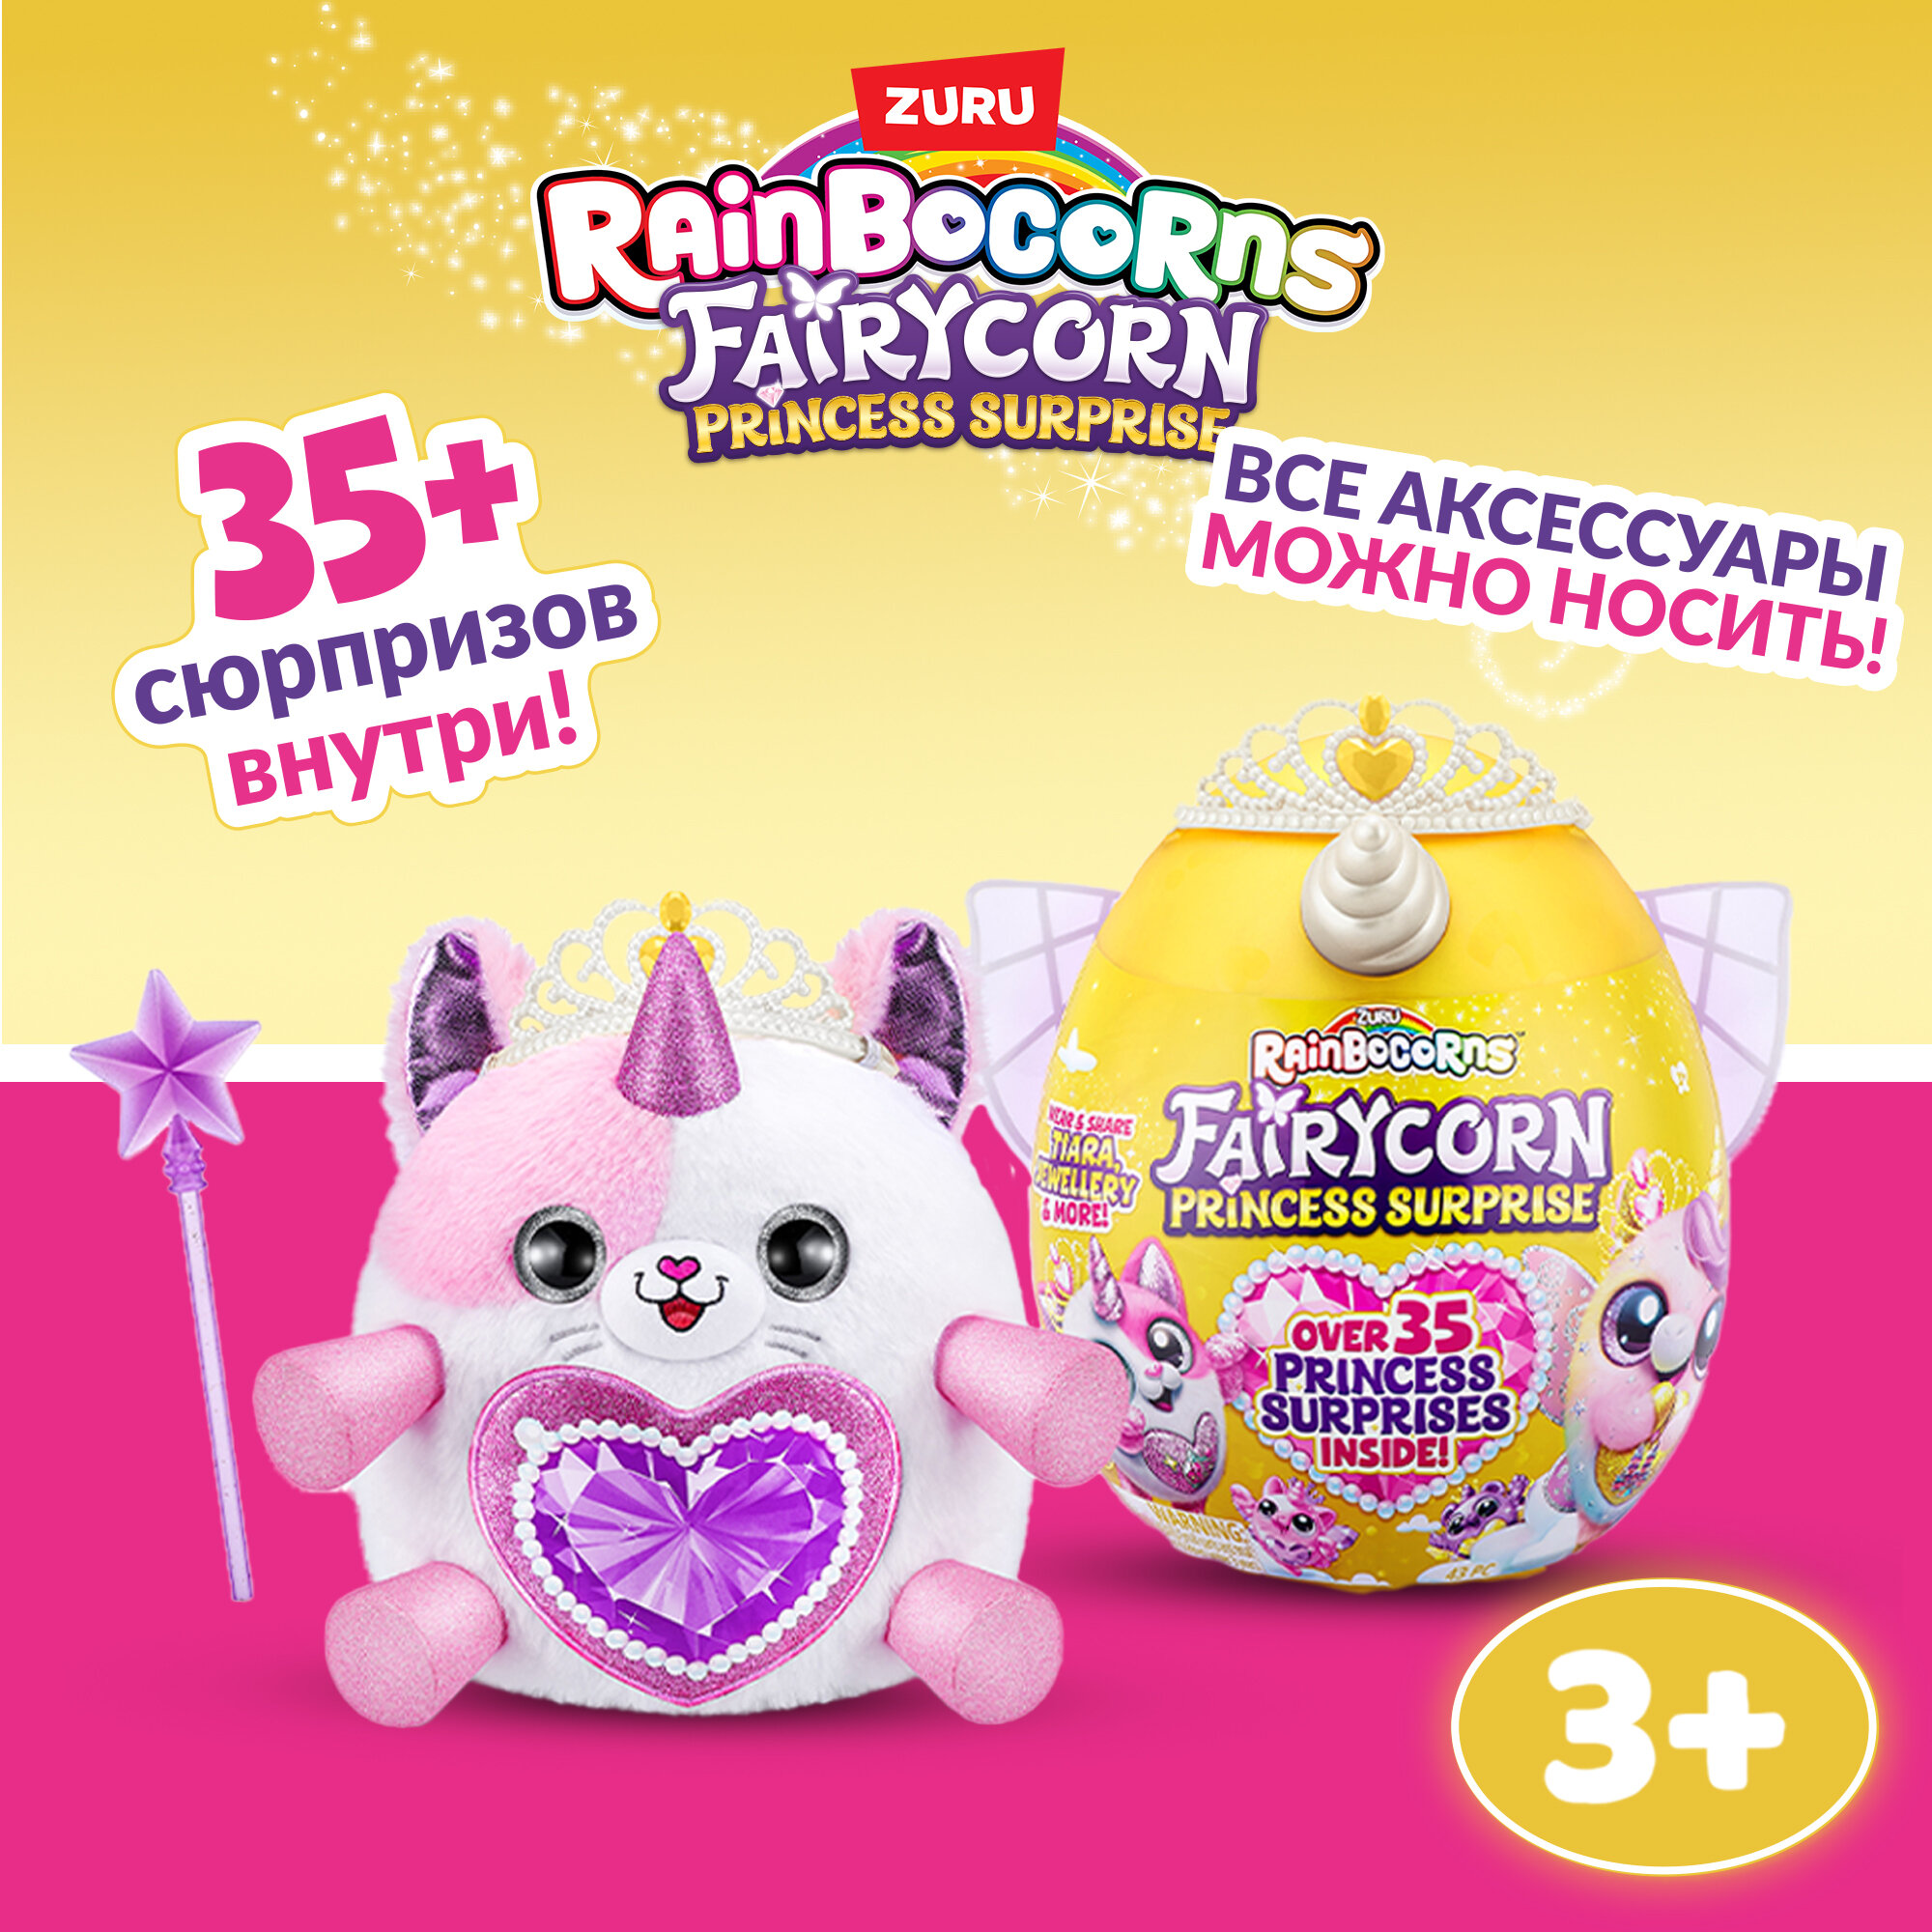 Игровой набор ZURU Rainbocorns Fairycorn Princess Surprise 9281